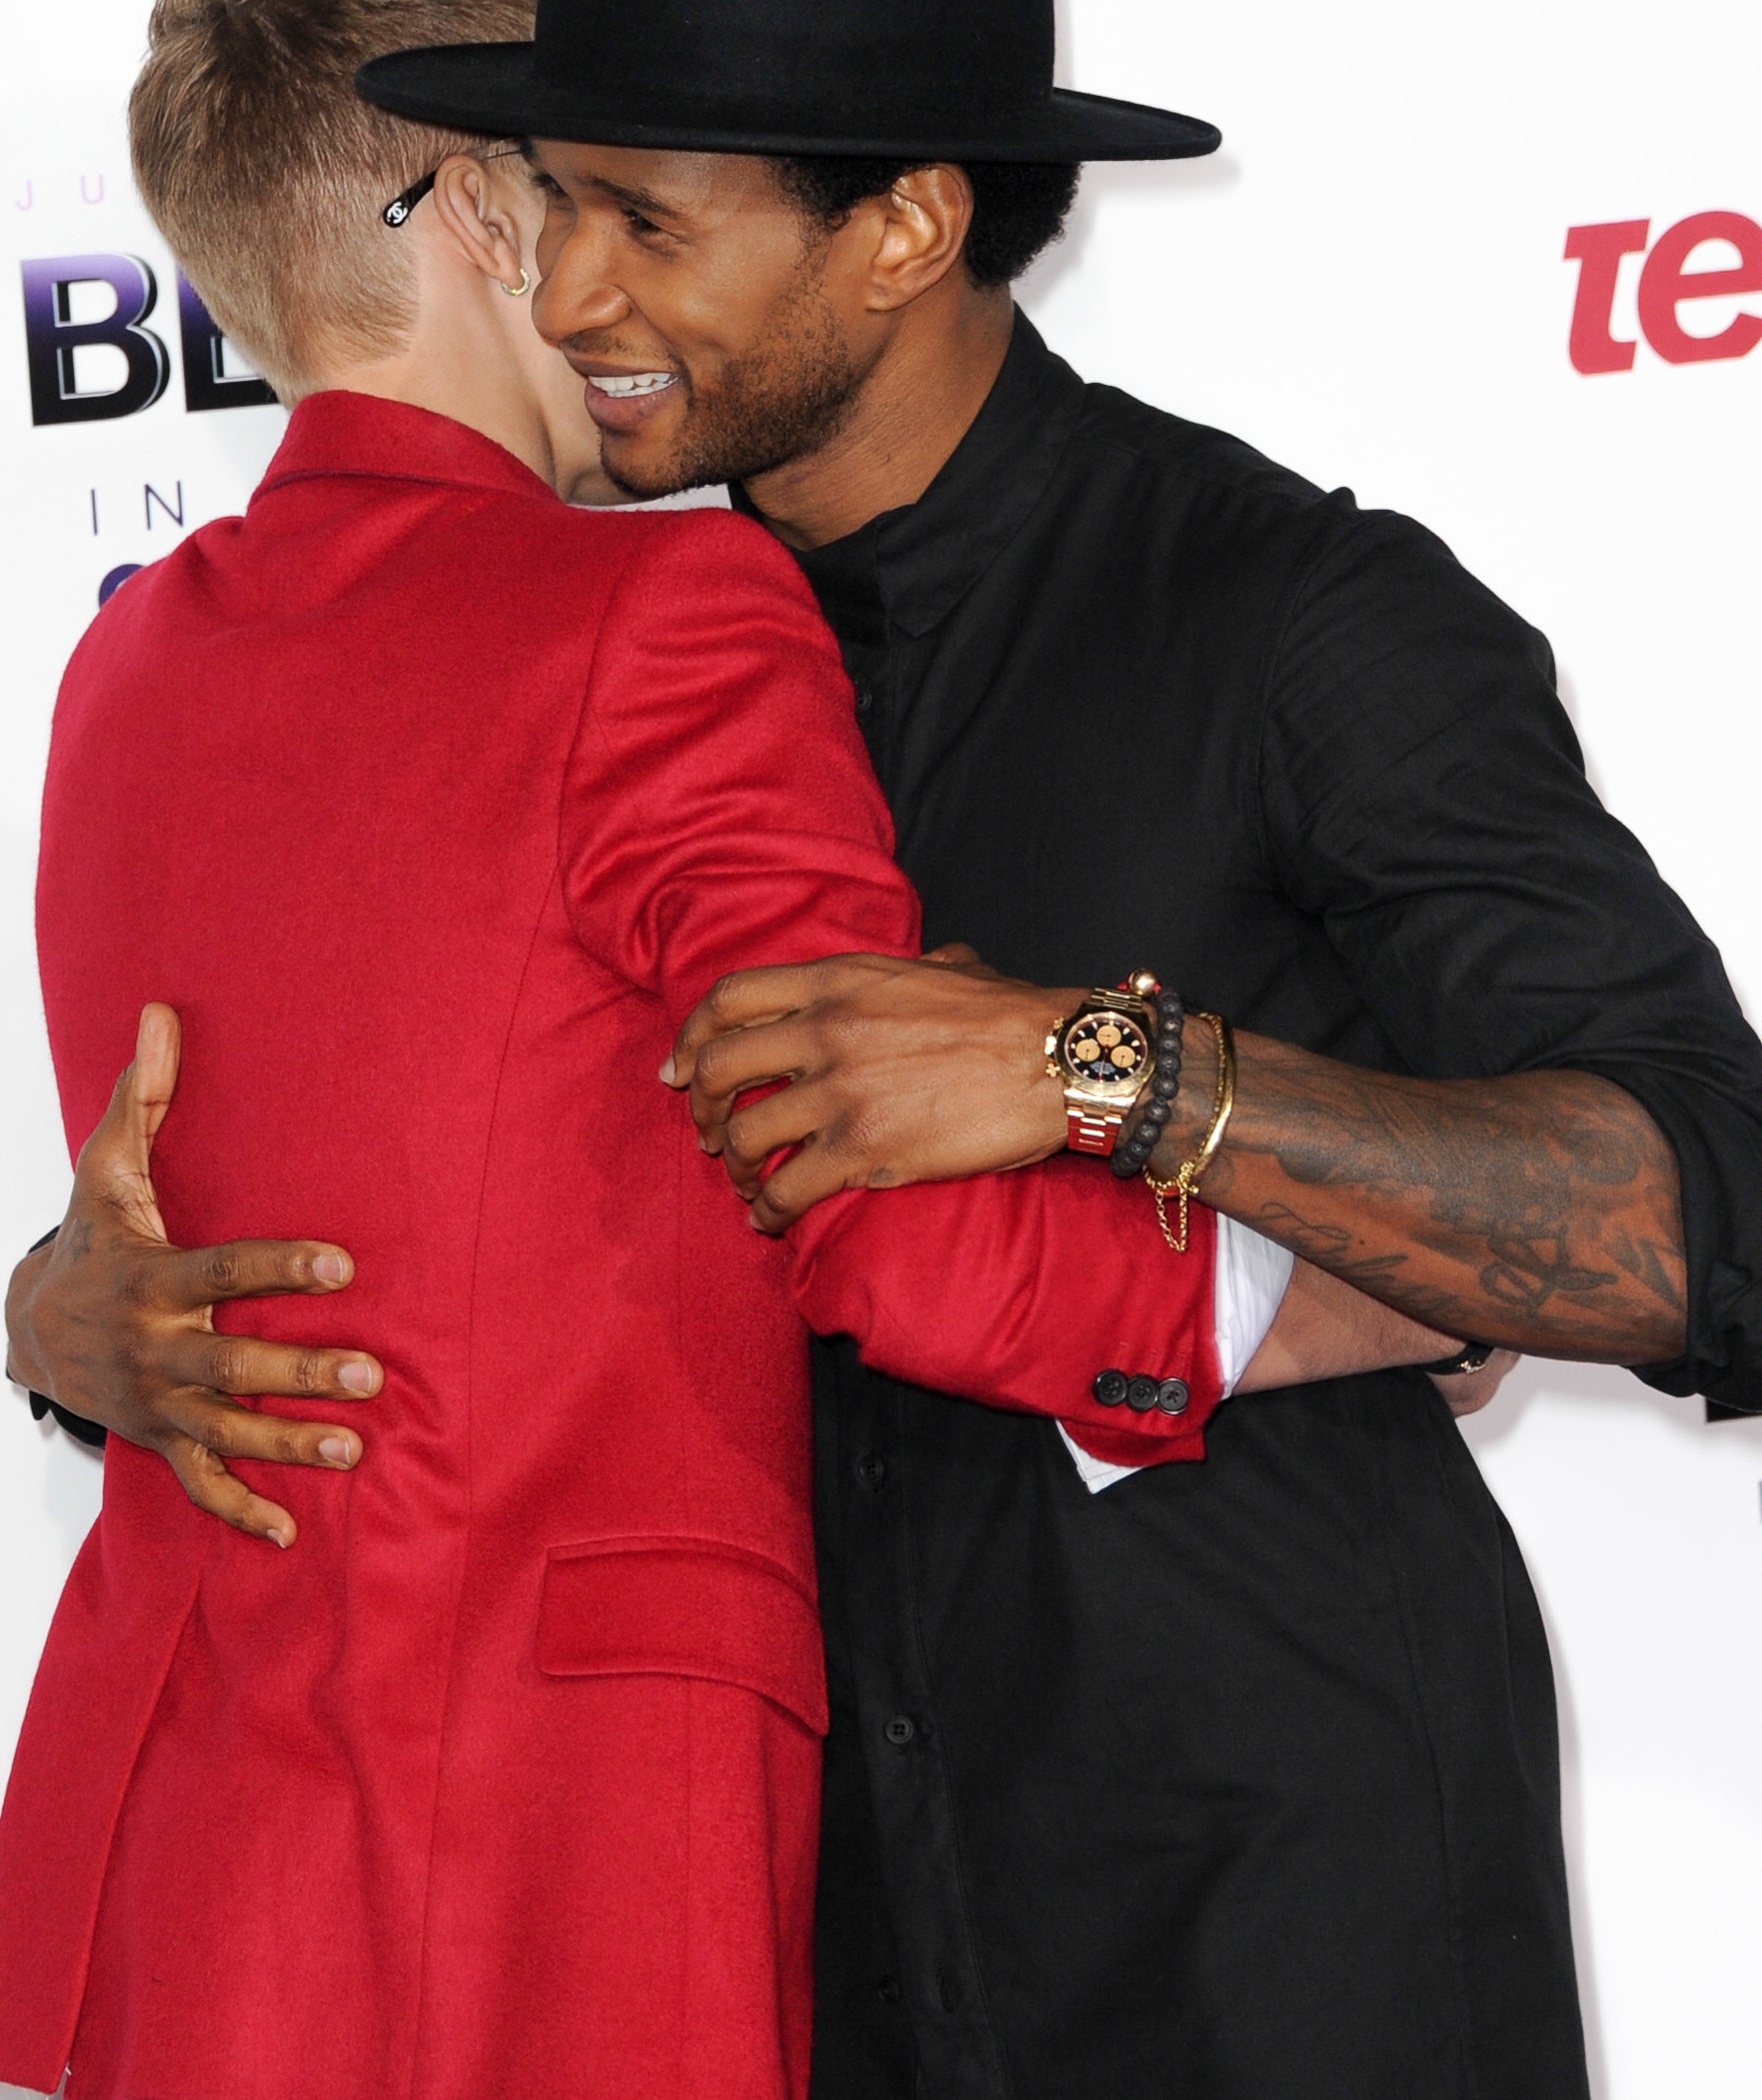 Closeup of Justin and Usher embracing